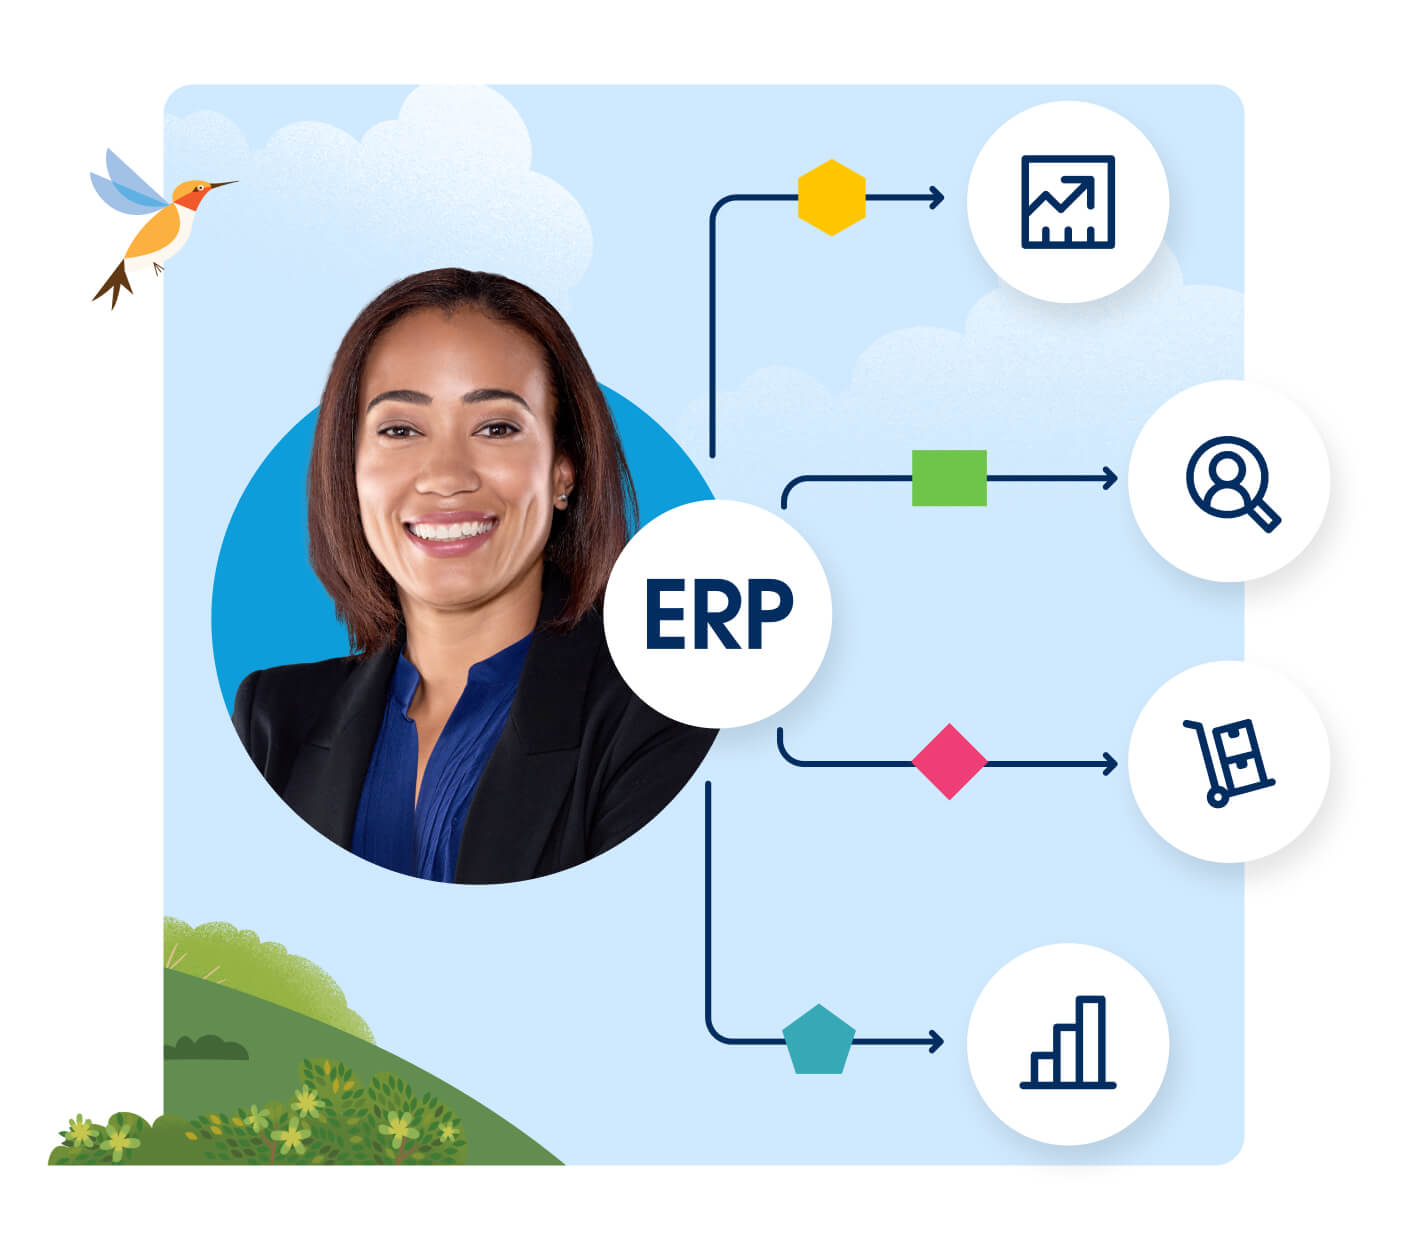 Jumpstart ERP integrations by unlocking SAP ERP data